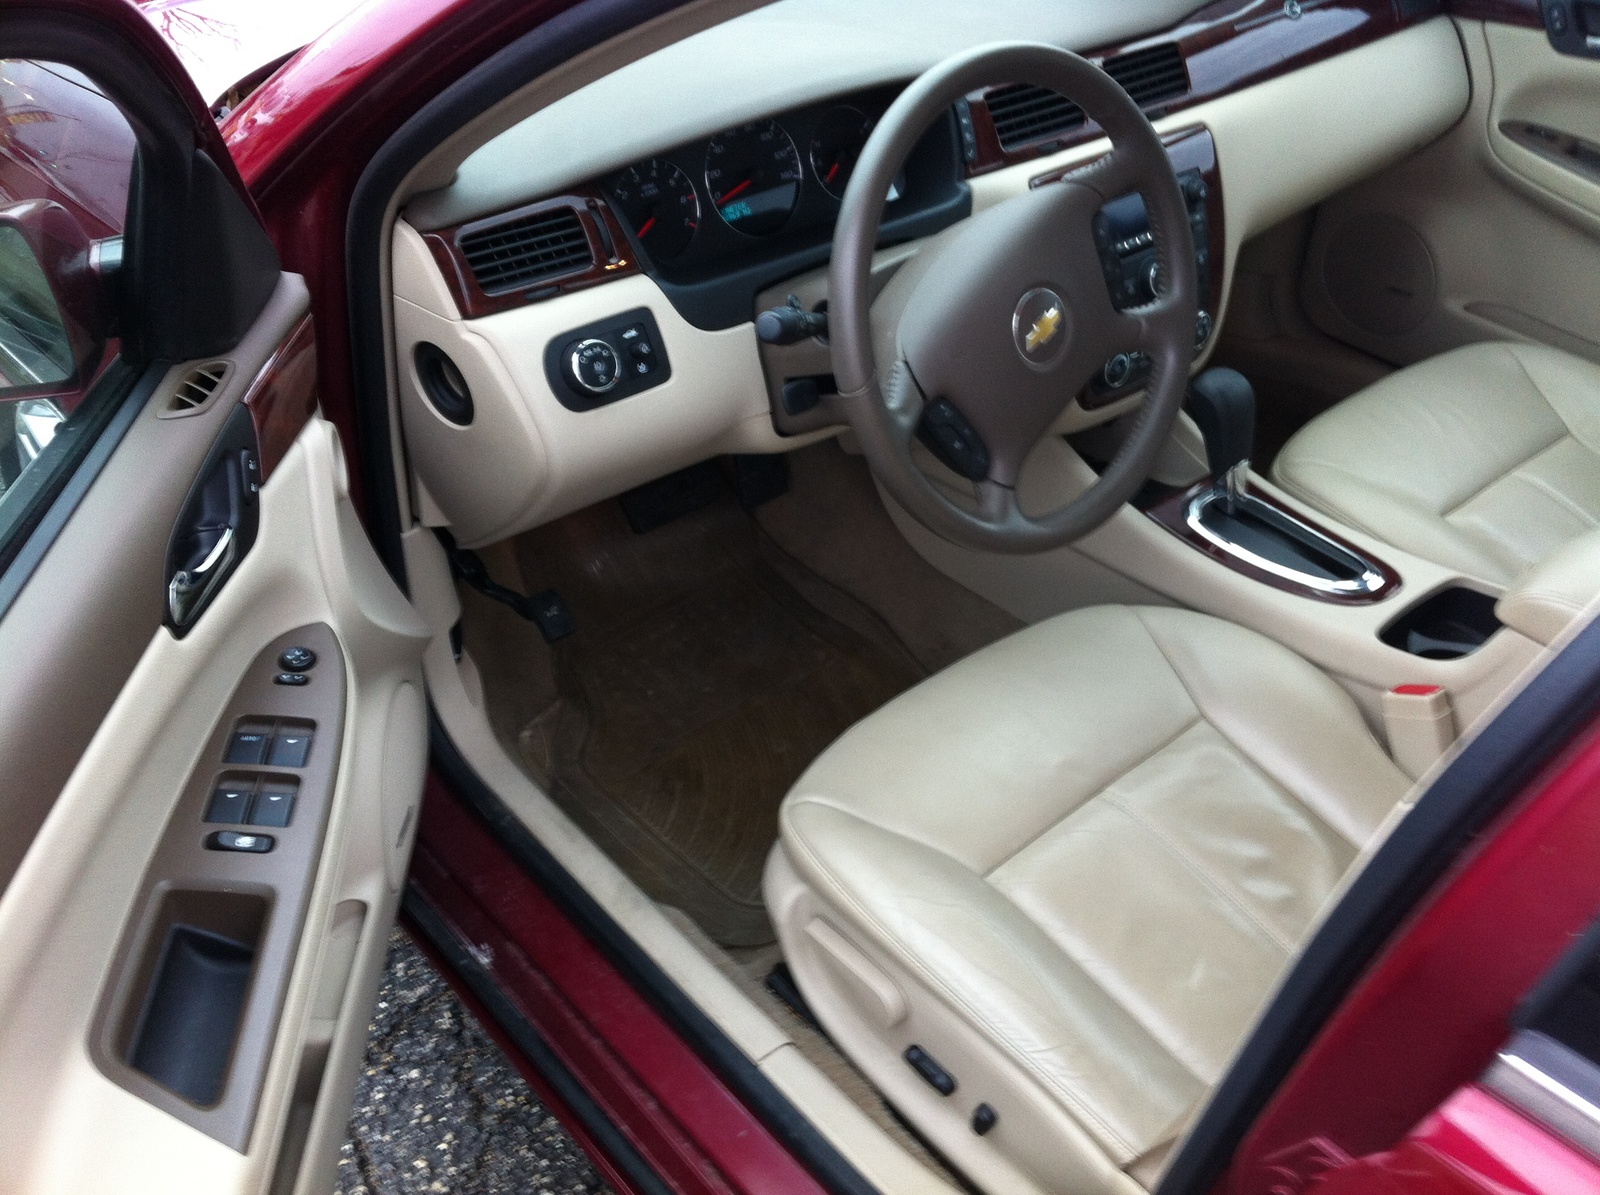 2006 Chevrolet Impala - Interior Pictures - CarGurus